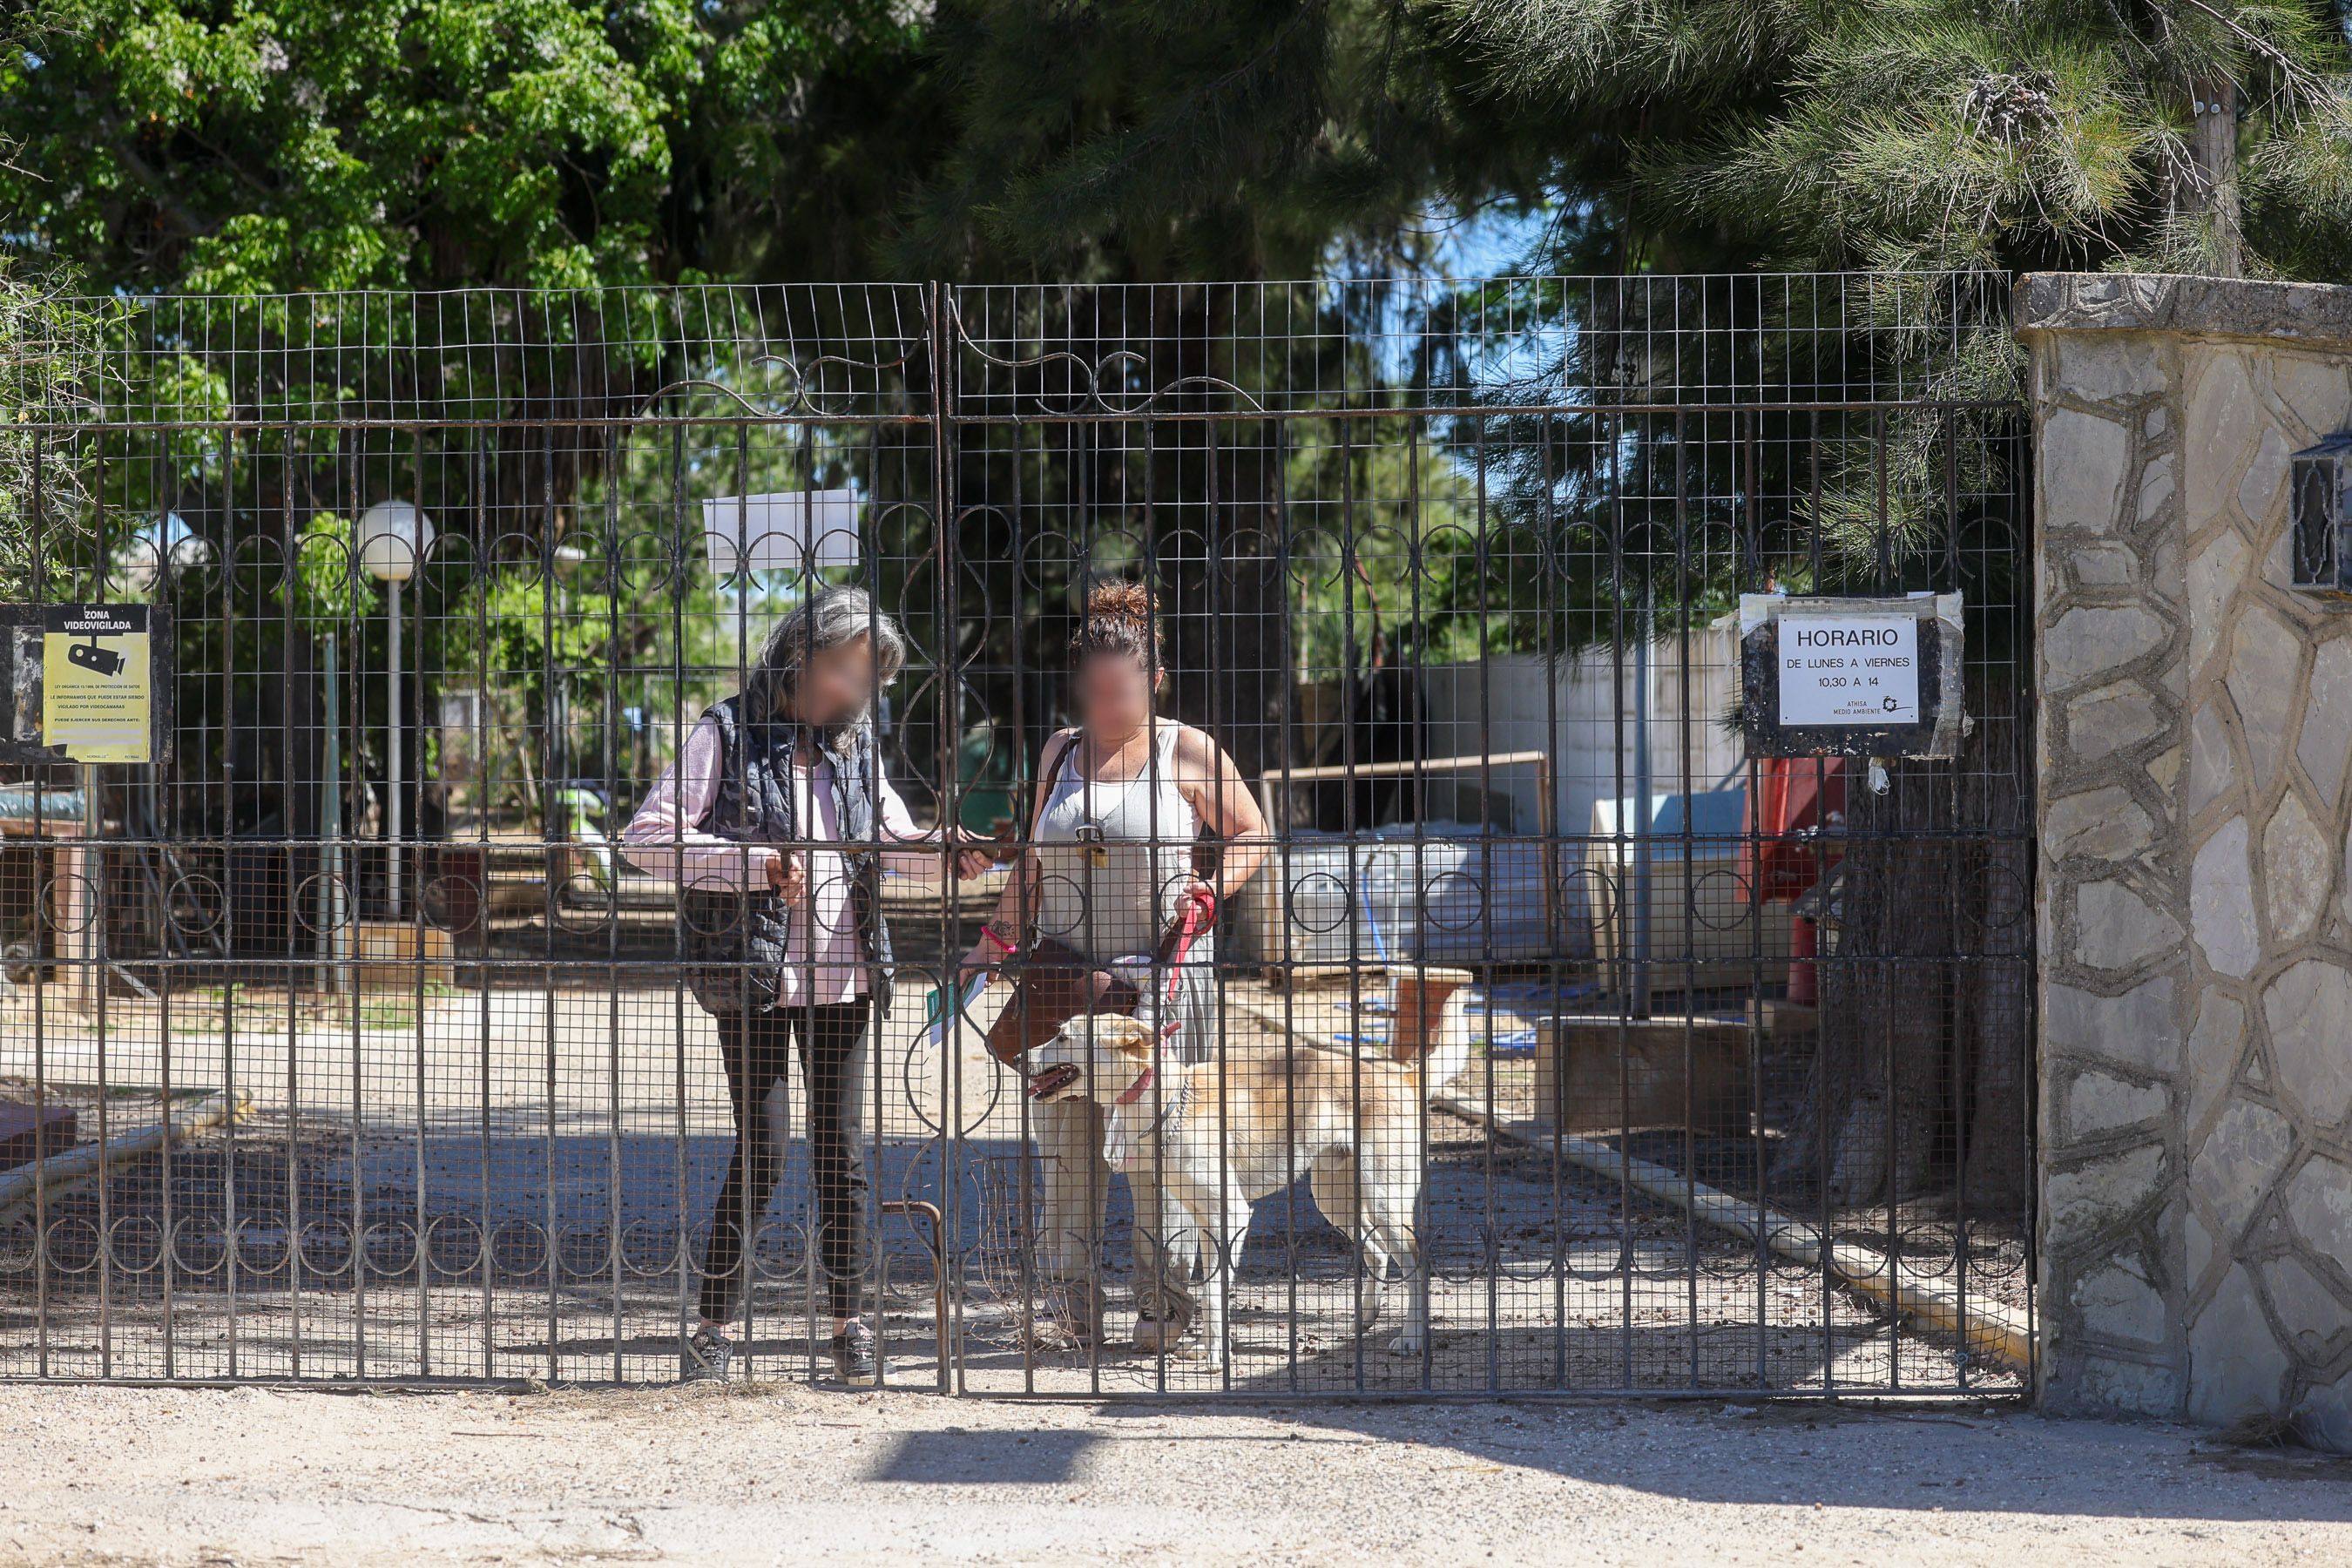 Una usuaria sale de las antiguas instalaciones de Canicen, una de las instalaciones que cuida animales en la Bahía de Cádiz.